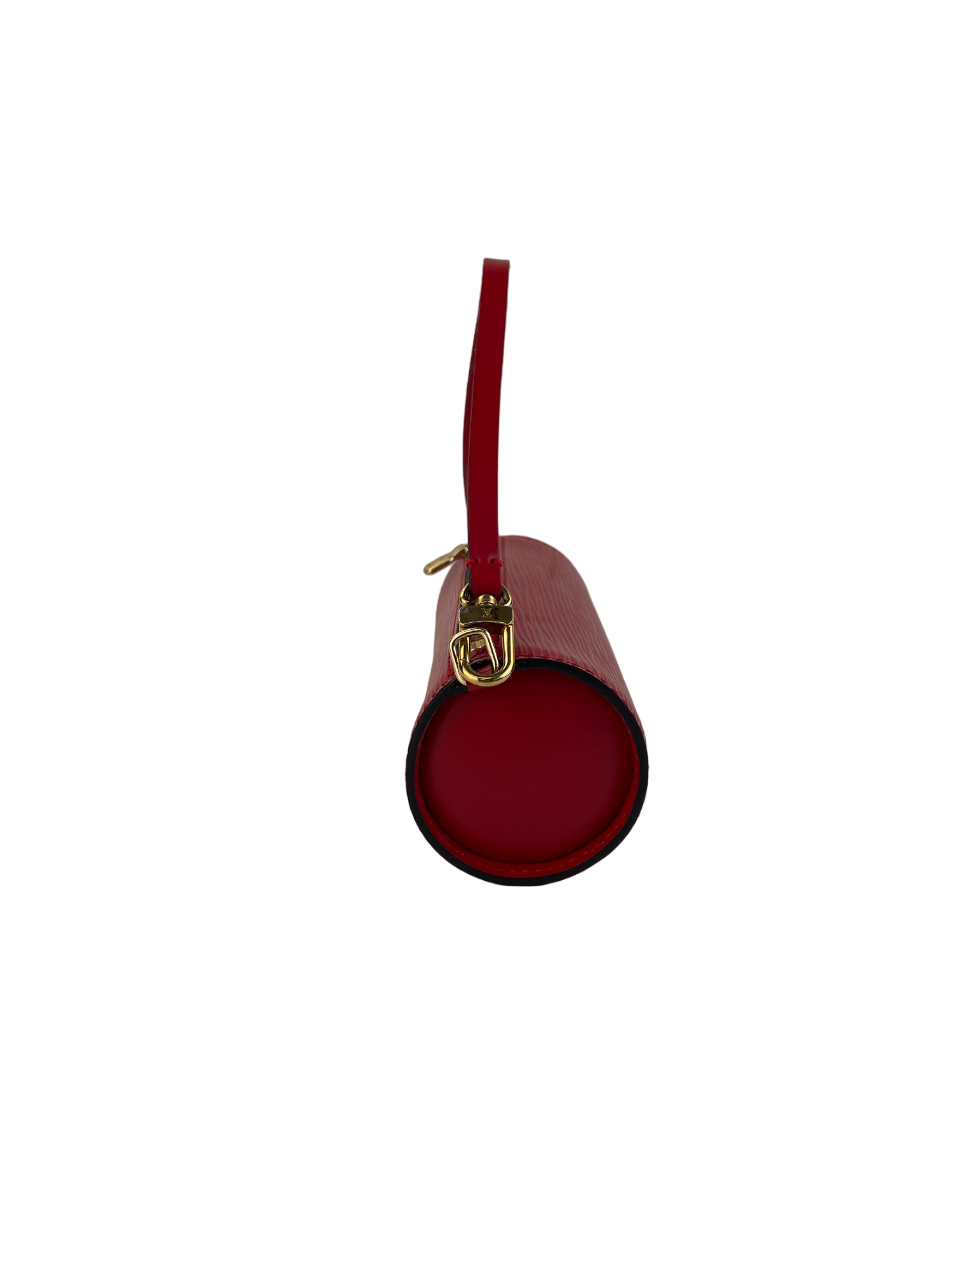 Louis Vuitton Red Epi Leather Mini Soufflot Papillon Wristlet (CMP037649)